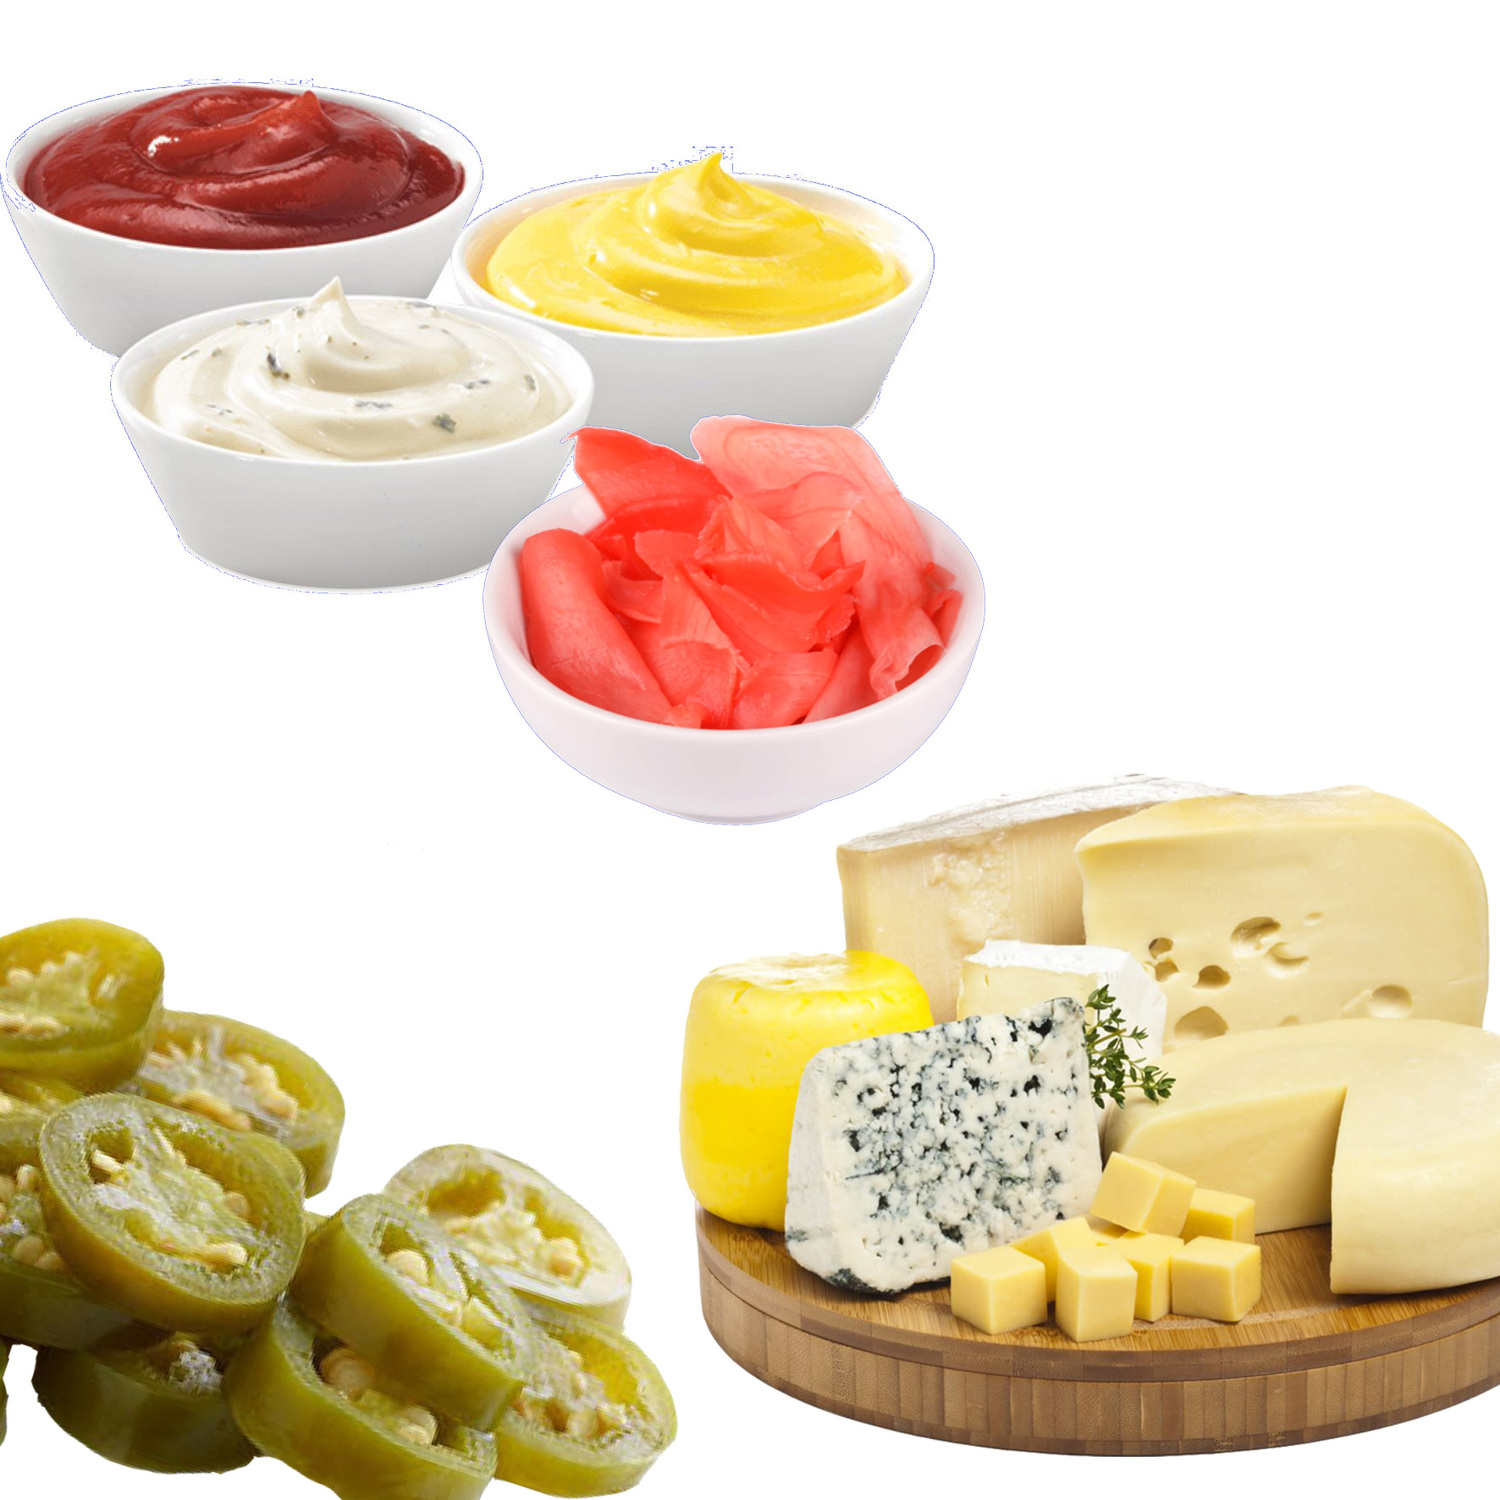 добавки - сыр, соус, халапеньо